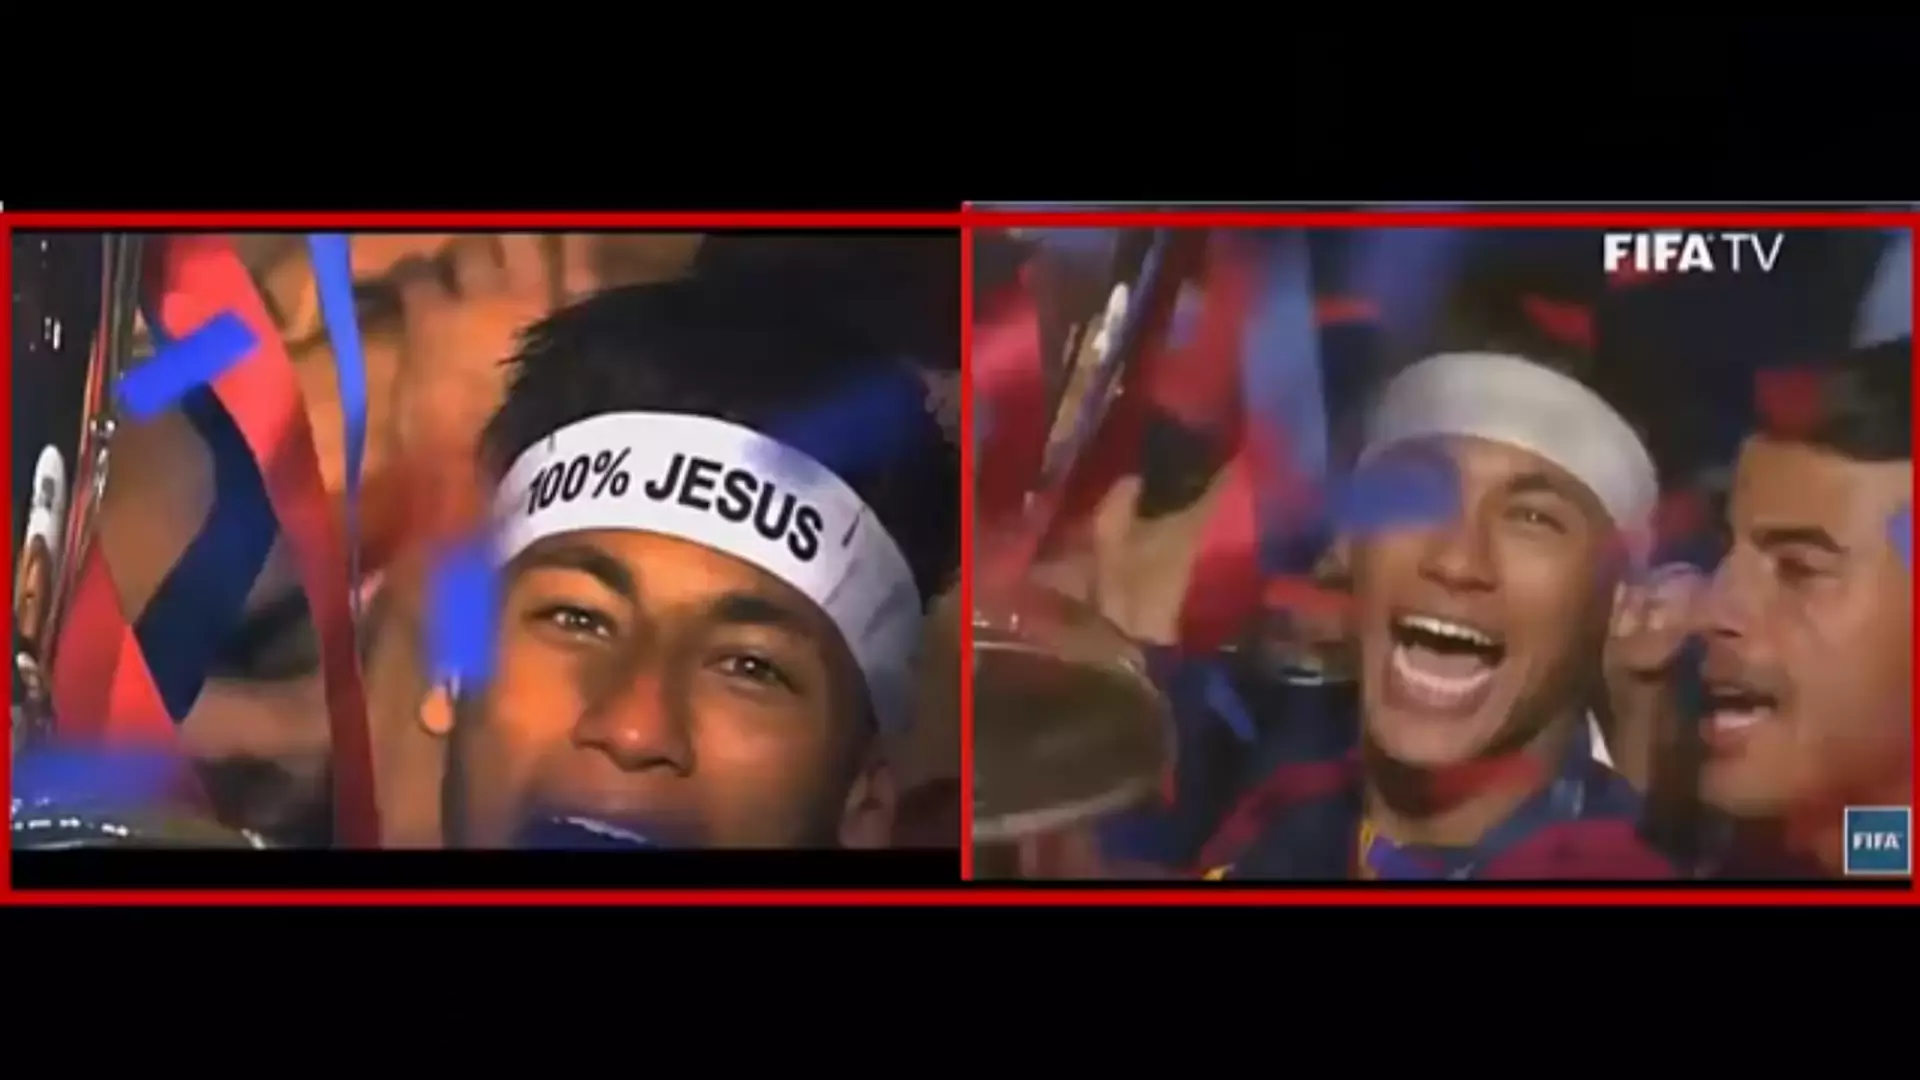 Kontrowersje podczas gali wręczenia Złotej Piłki. Z opaski Neymara usunięto napis "100% Jesus"